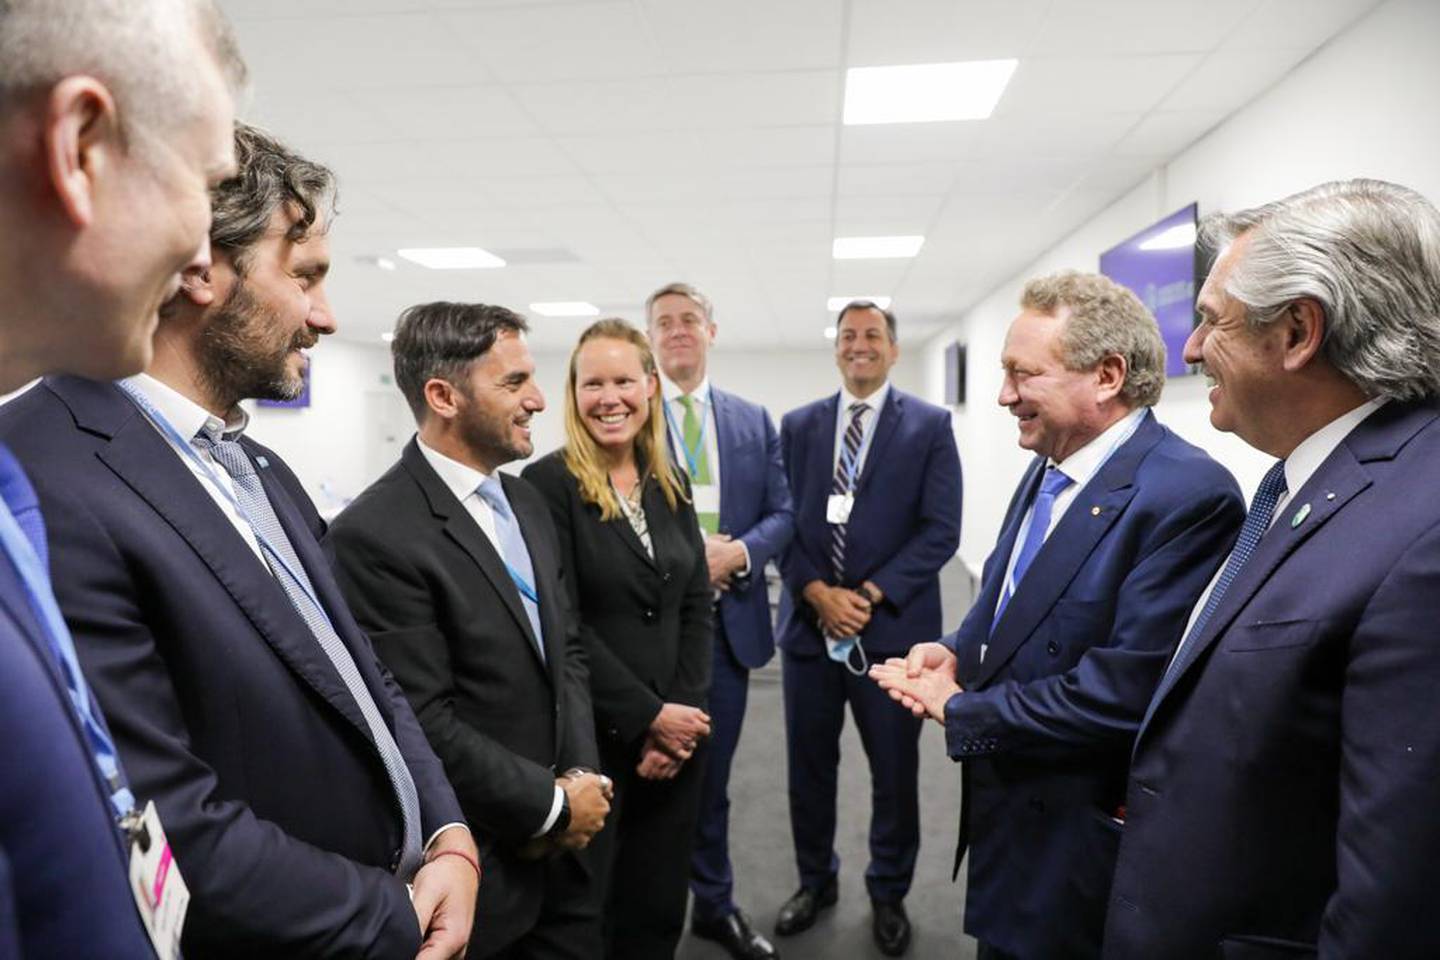 El Presidente Fernández junto a los ejecutivos de Fortescue (entre los que se encuentra Agustín Pichot), la empresa australiana que invertirá US$8 mil millones en el país para el desarrollo del hidrógeno verde.dfd